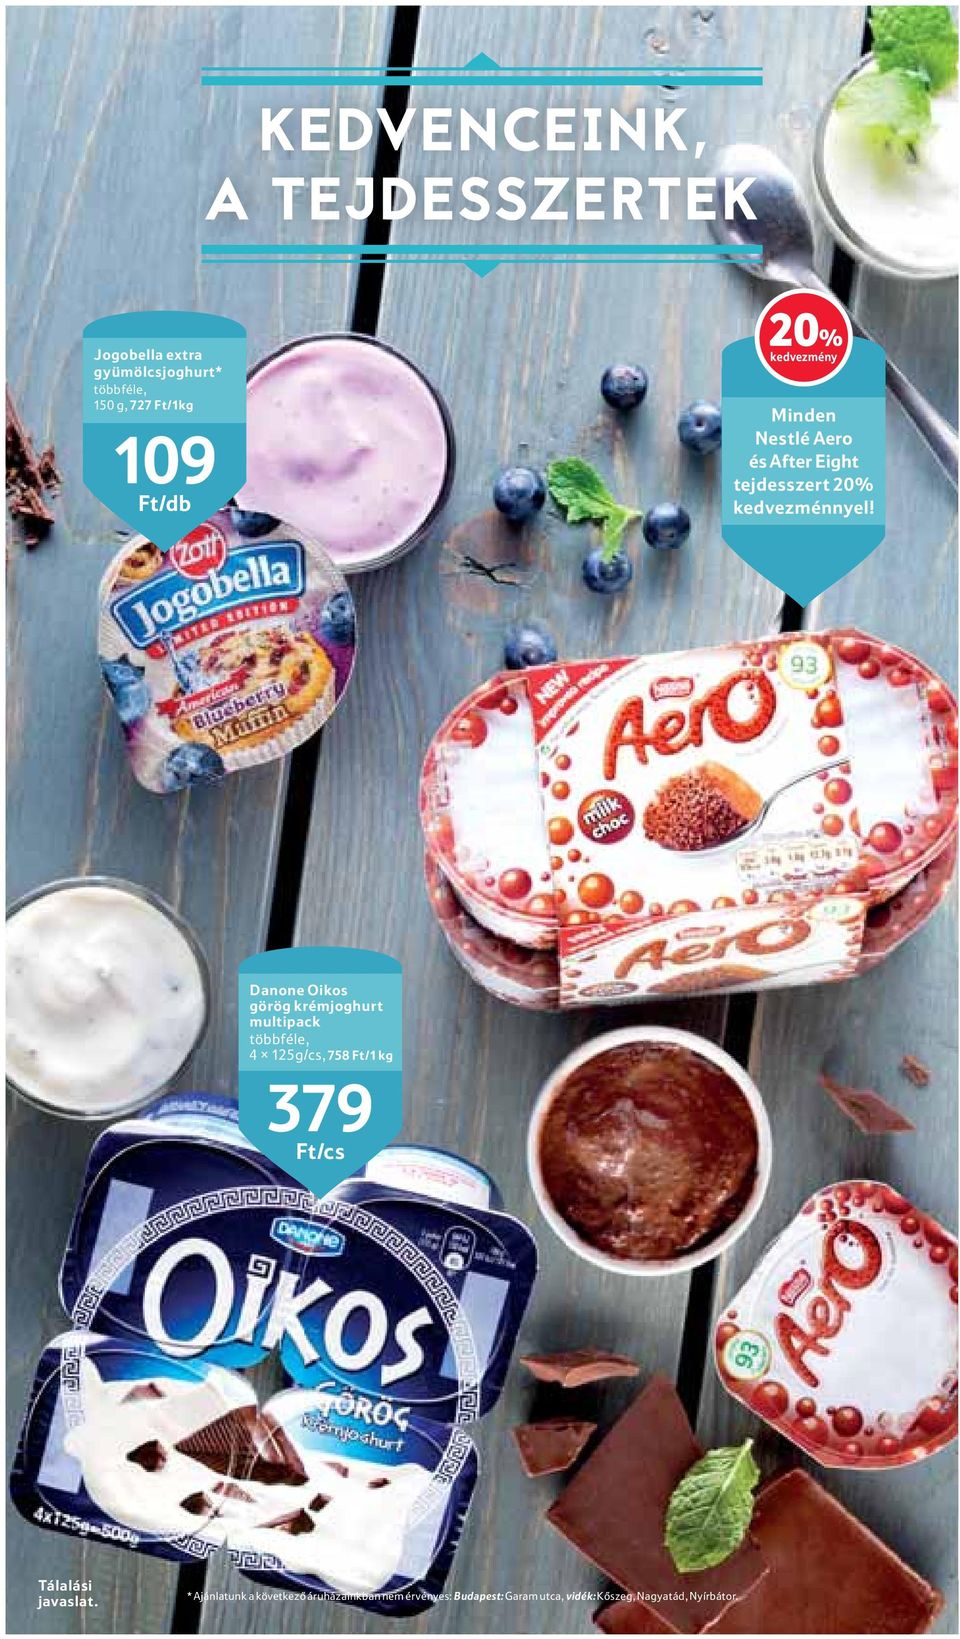 Danone Oikos görög krémjoghurt multipack többféle, 4 125g/cs, 758 Ft/1 kg 379 Ft/cs Tálalási